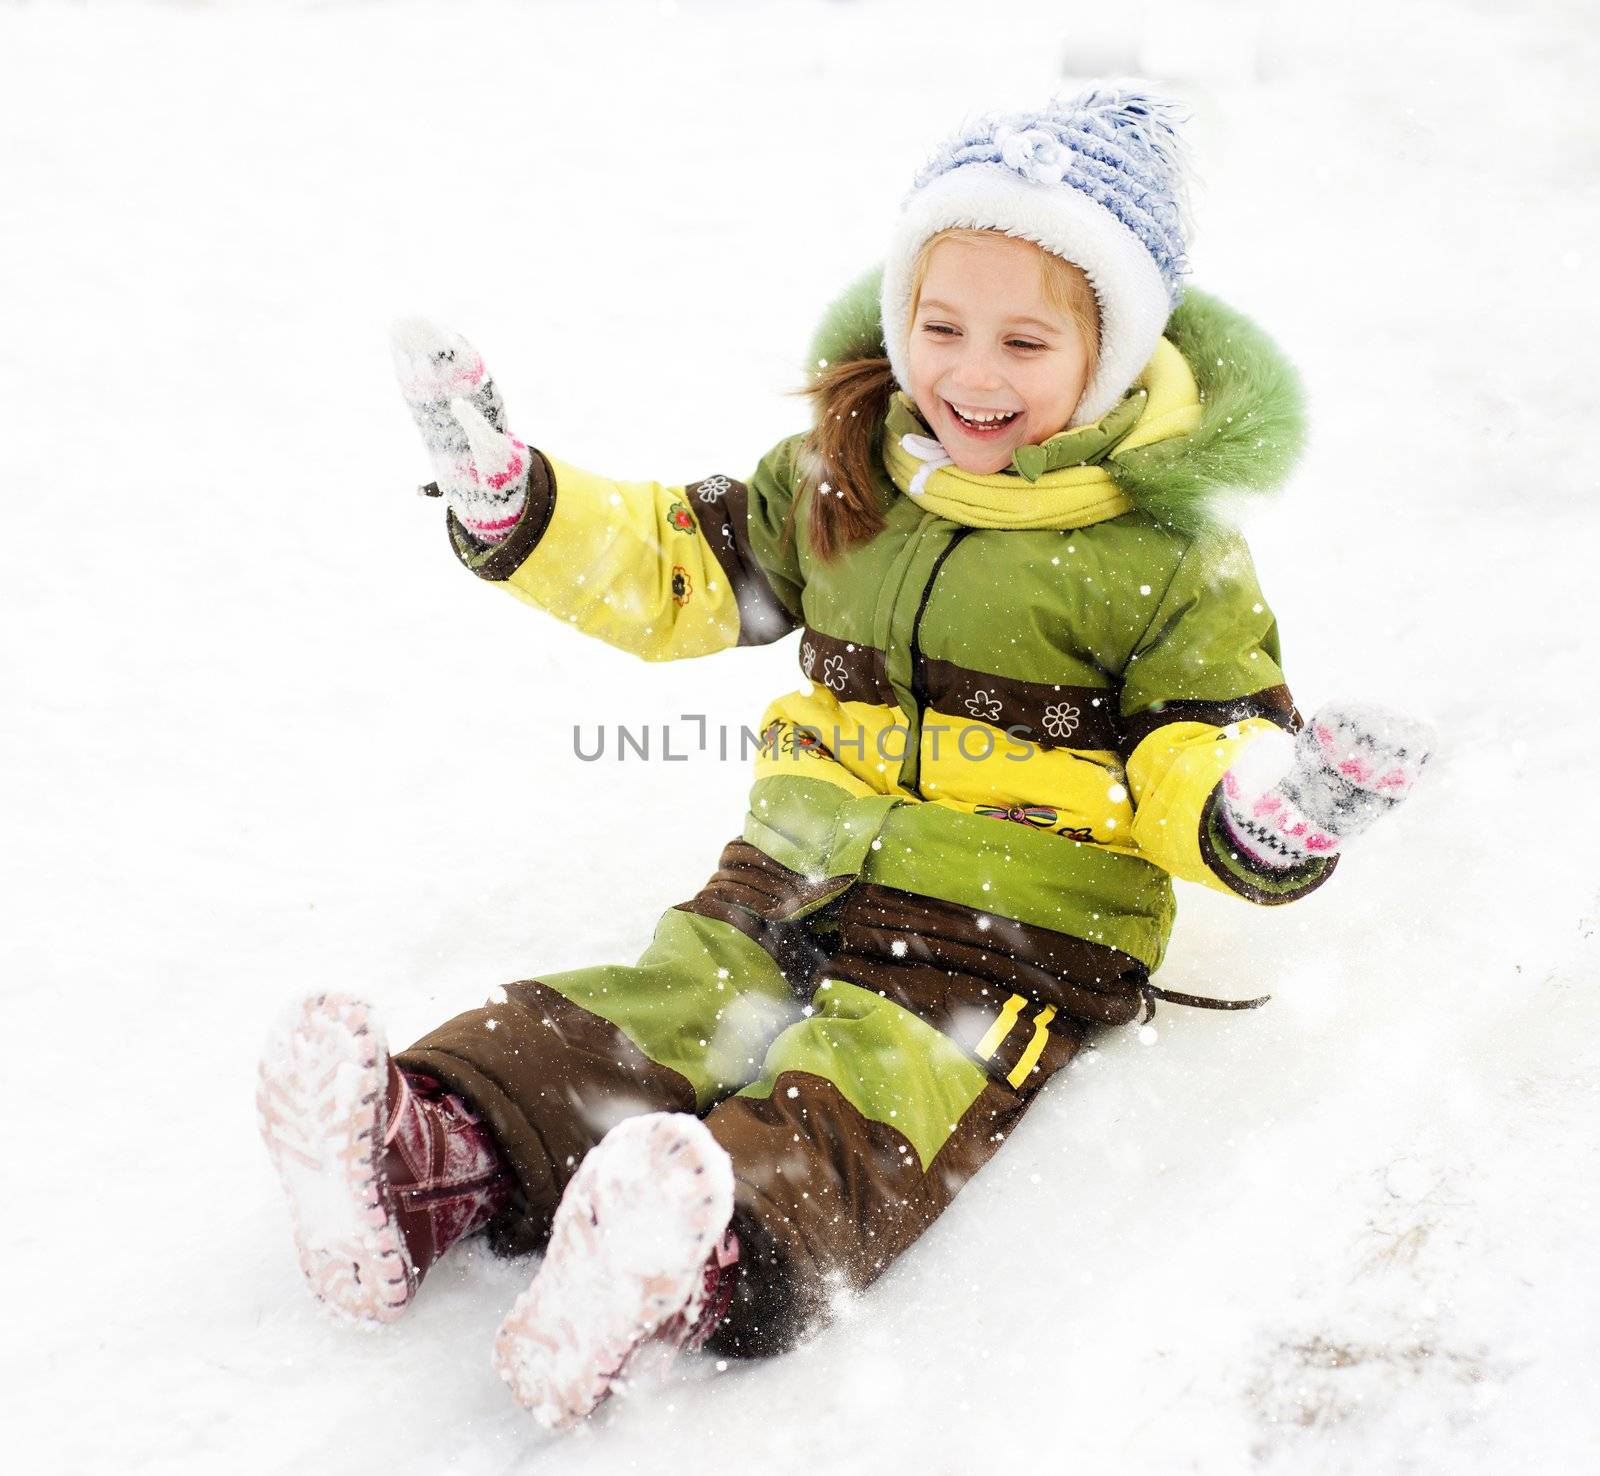 Smiling Little girl on the ice slide